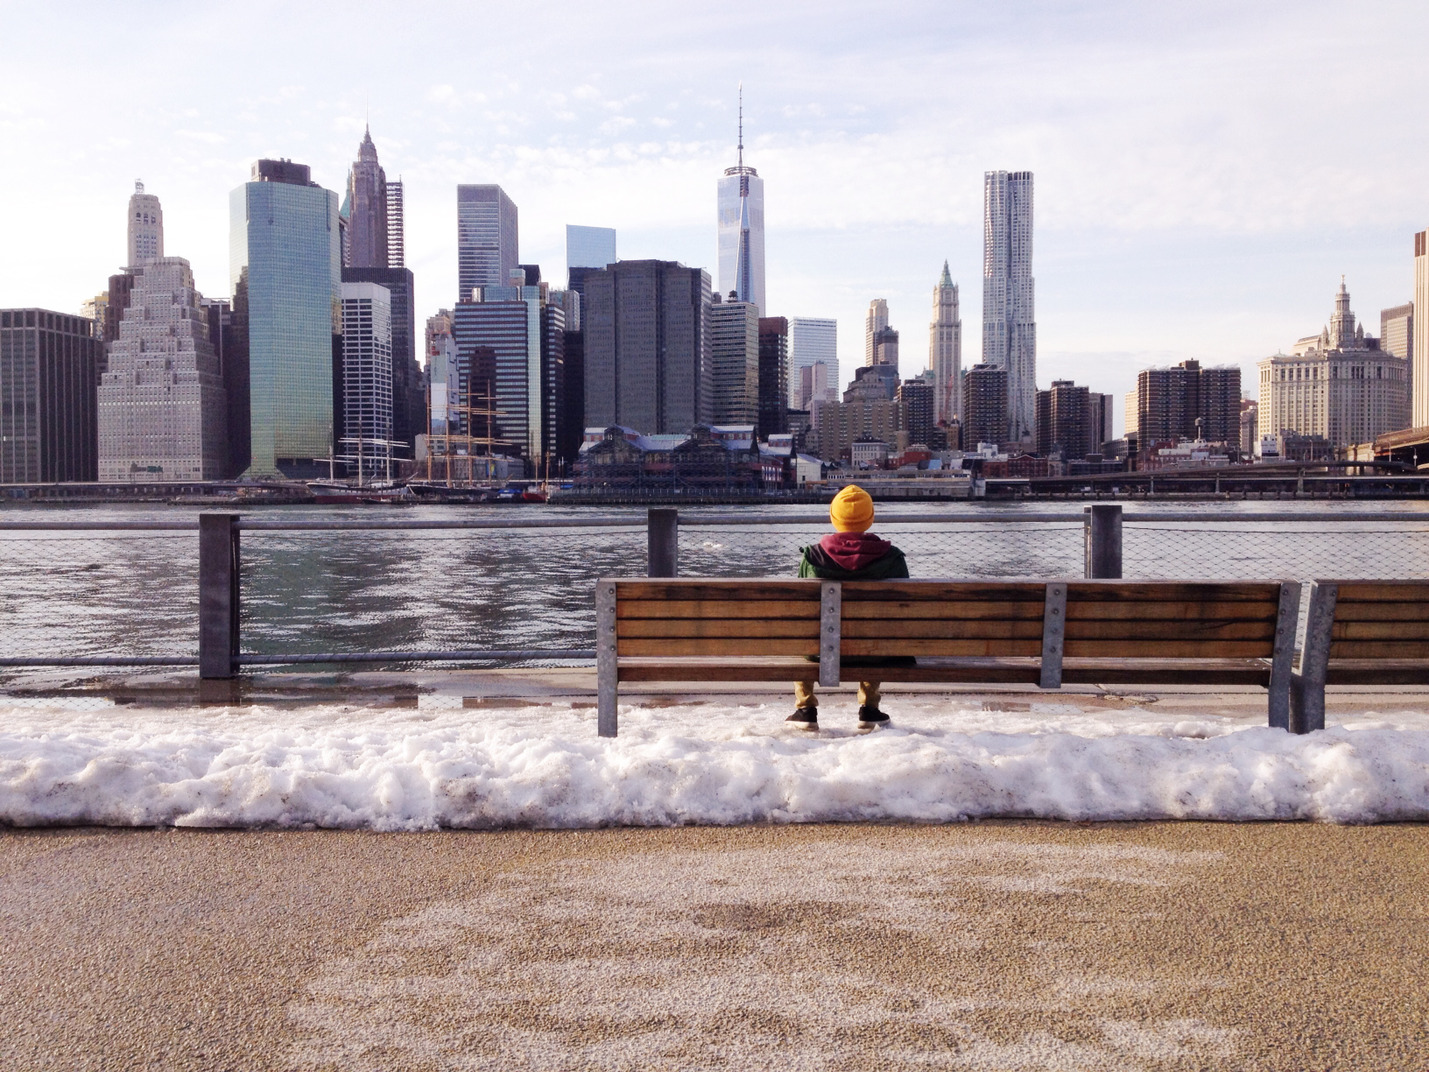 坐在长凳上欣赏城市景观的男人